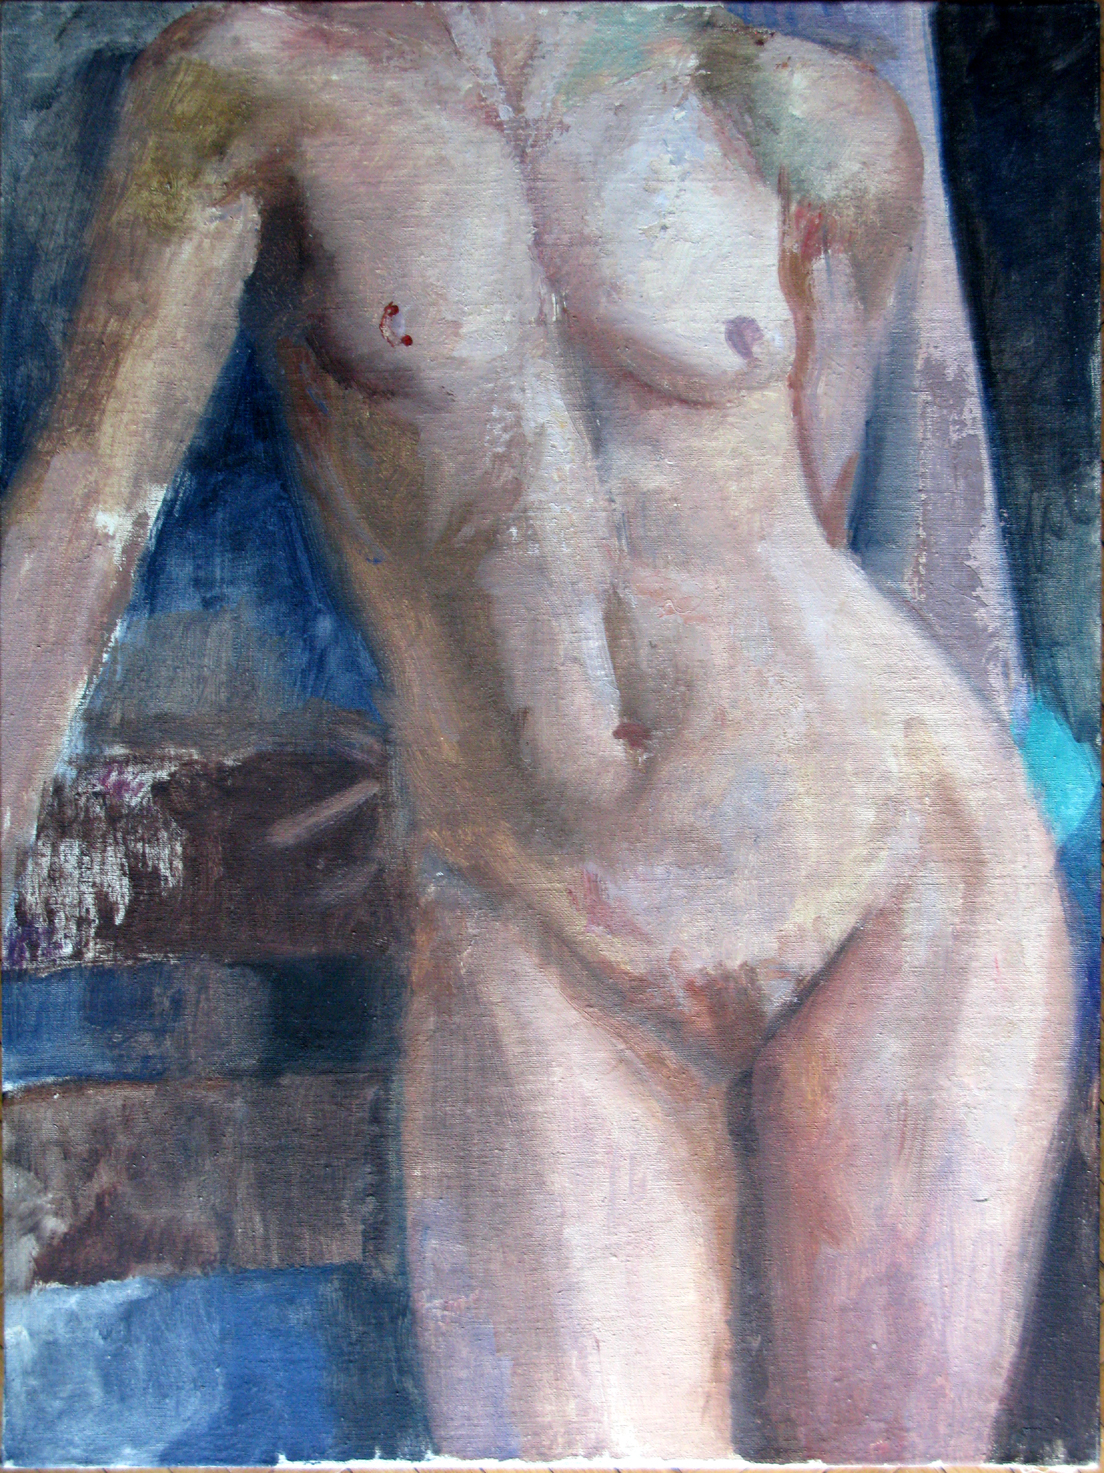 Eva, Torso, 24" x 18", oil on panel, 2004.